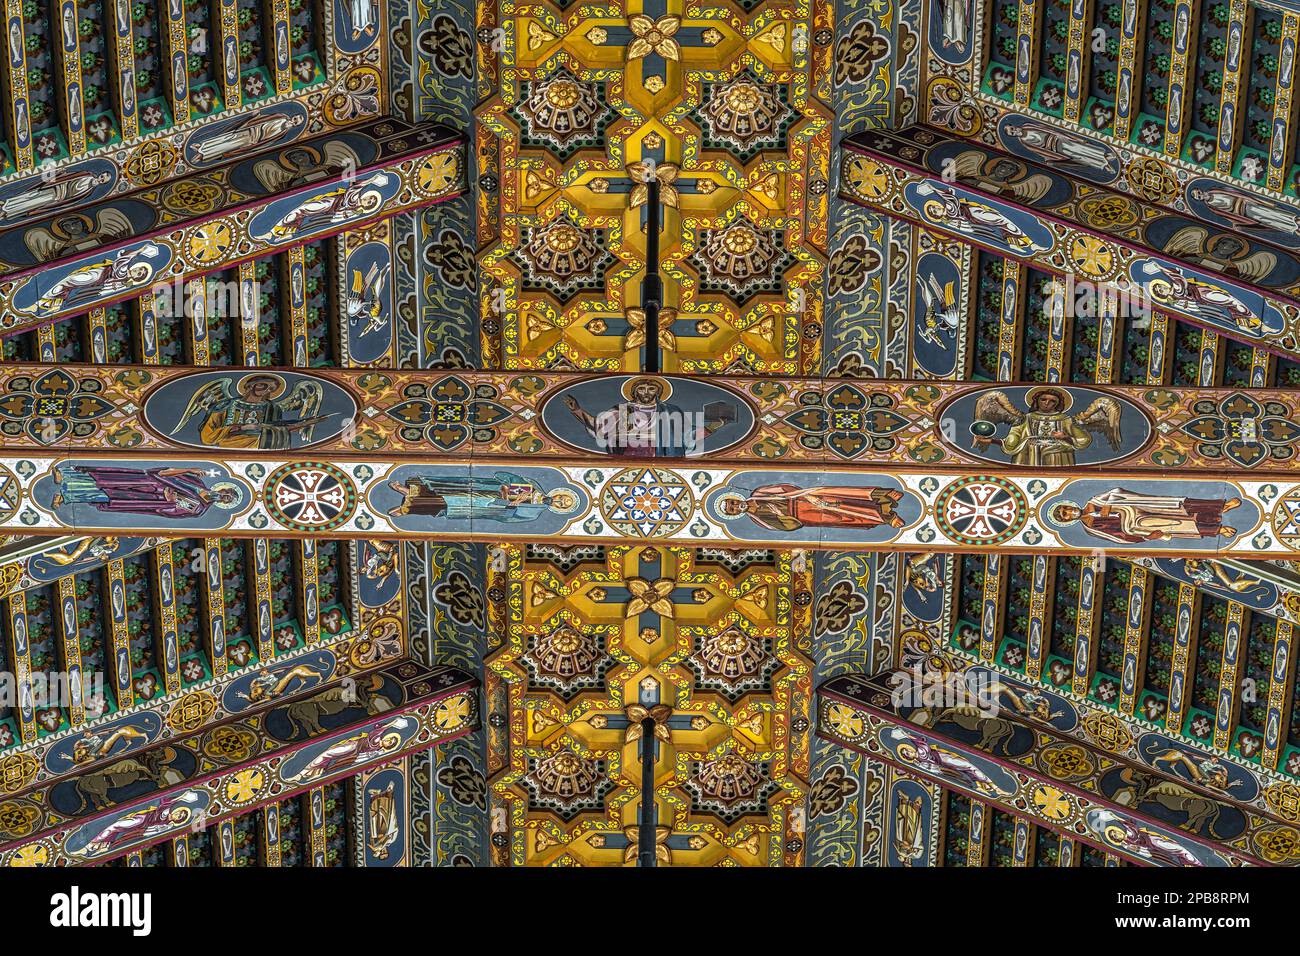 Détail du toit fait avec des fermes en bois peintes et décorées avec des figures géométriques et des saints dans la basilique de Santa Maria Assunta. Banque D'Images